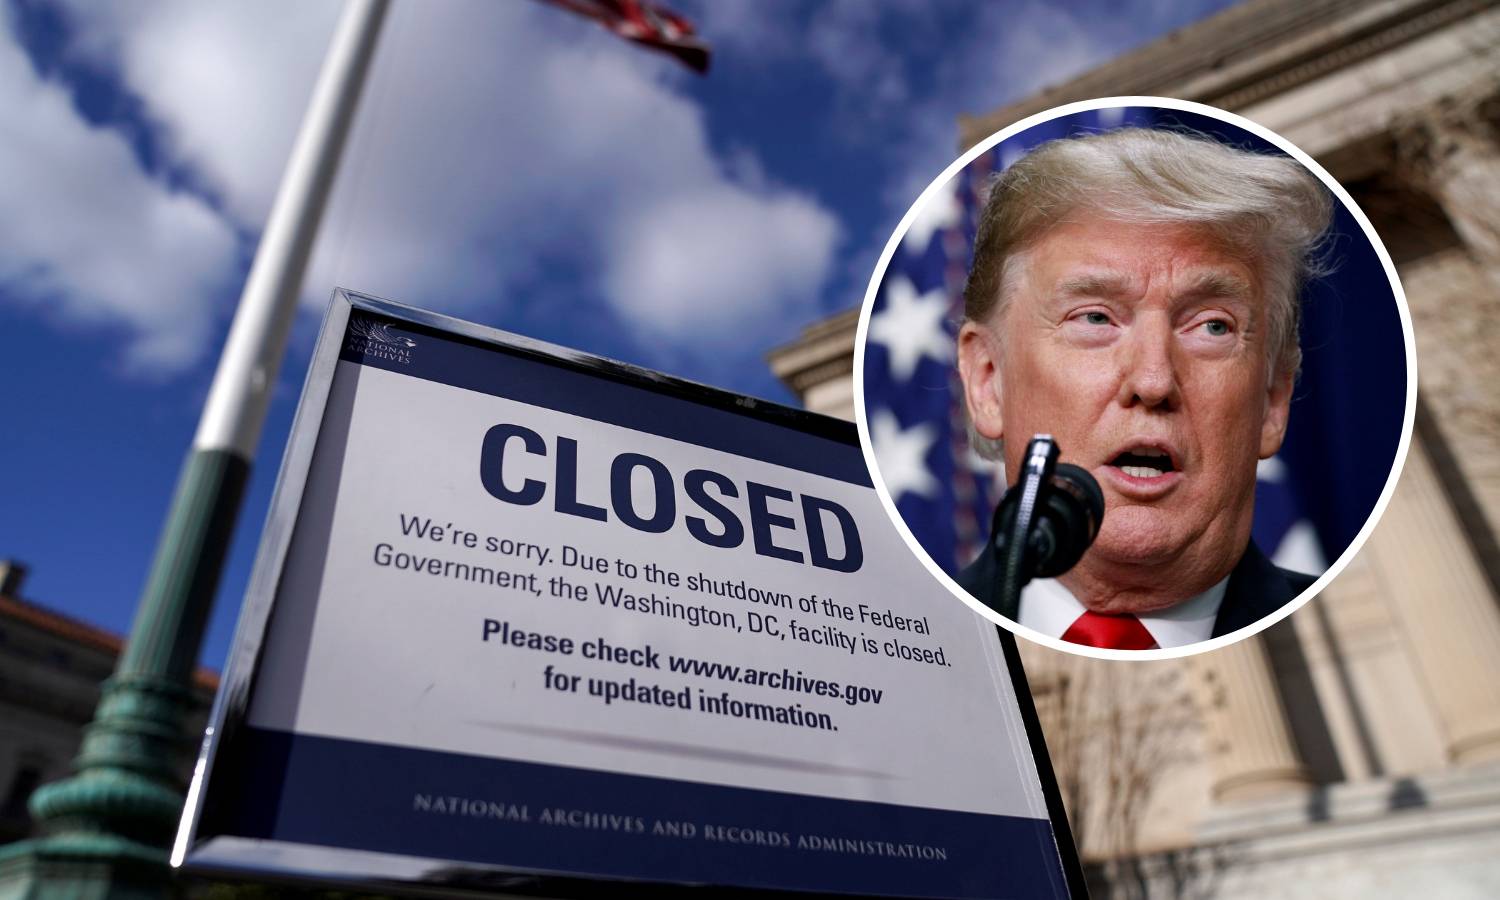 Donald Trump: Govor u stanju nacije održat ću nakon blokade